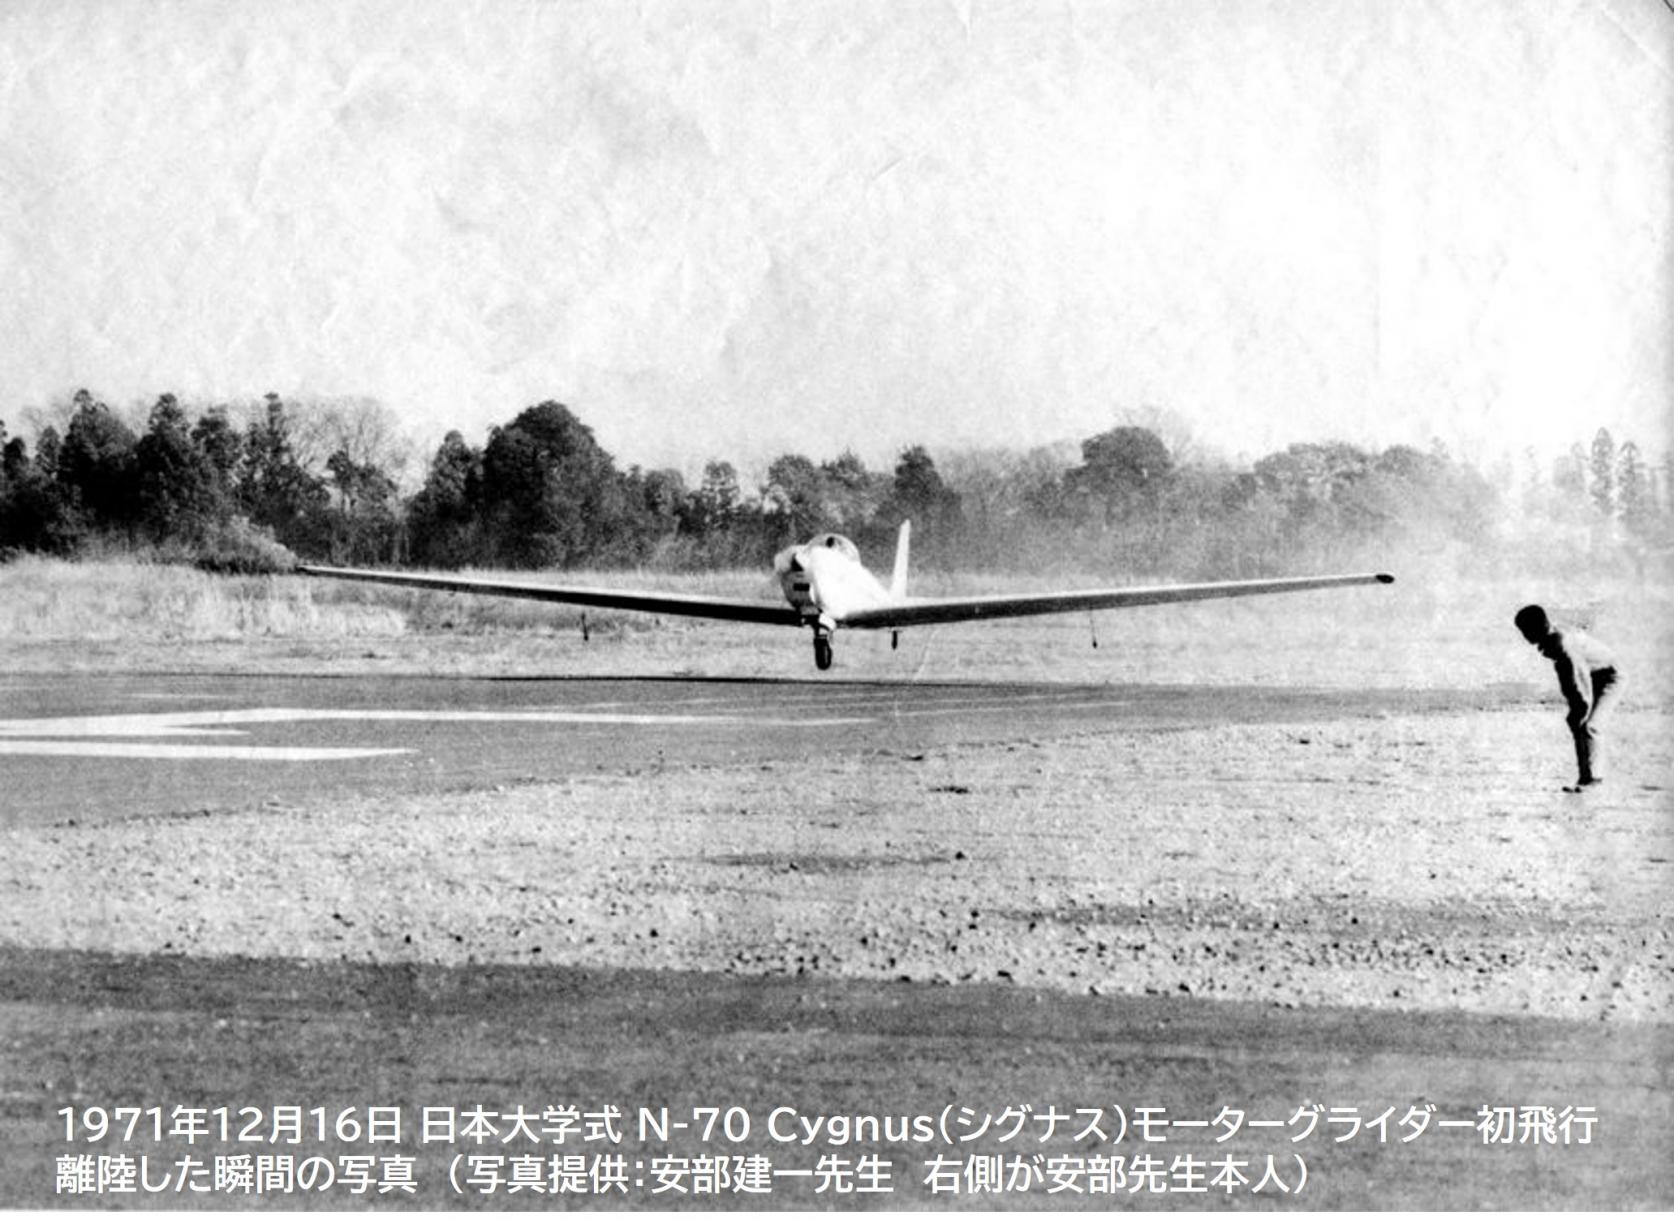 日本大学理工学部が設計製造した戦後初の本格的国産モーターグライダーN-70 Cygnus(シグナス)初飛行から51年